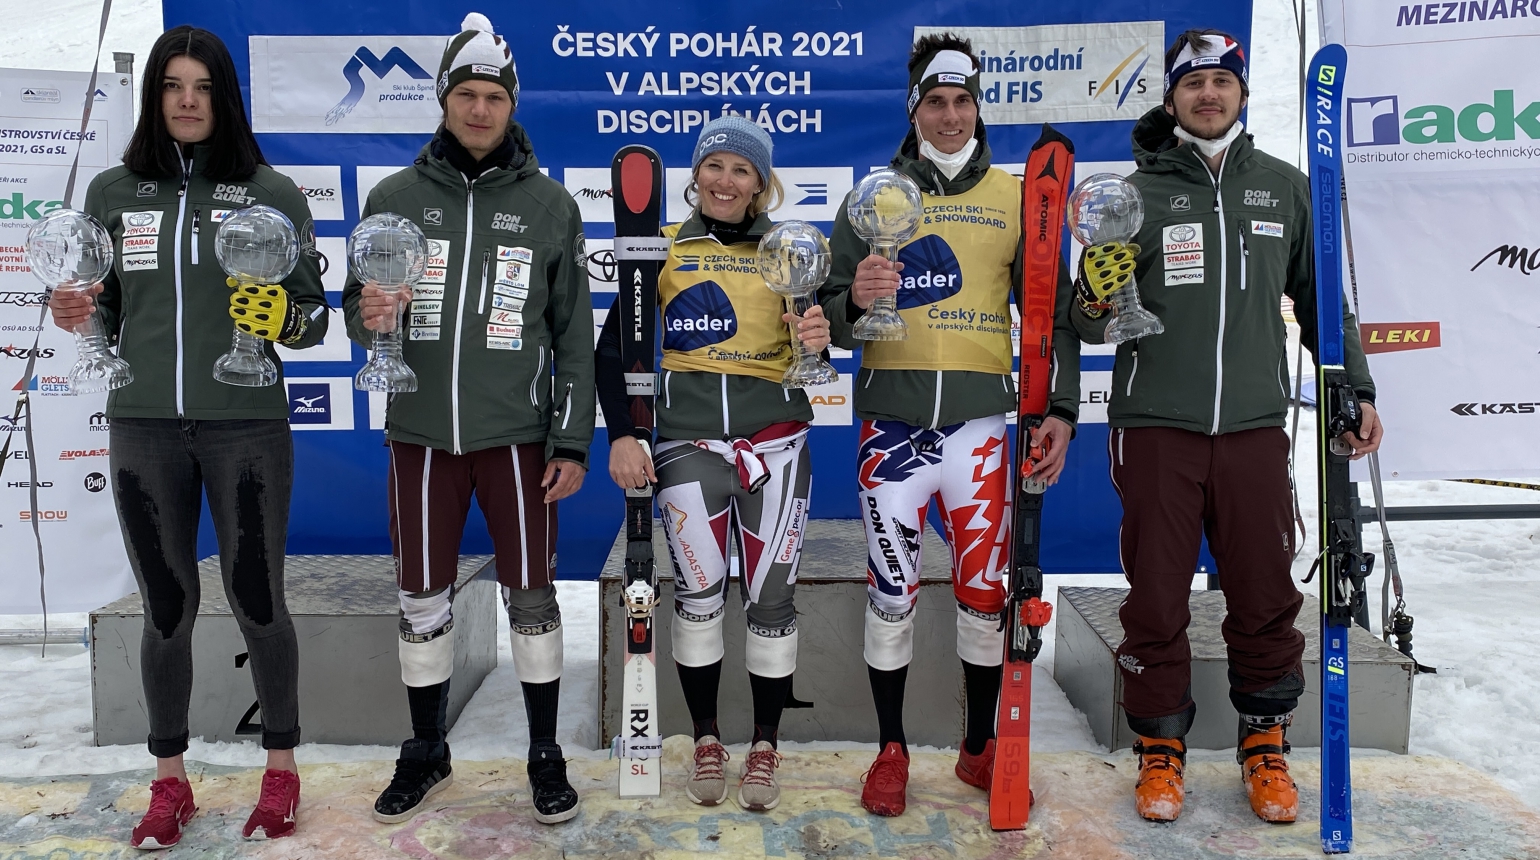 Český pohár alpských lyžařů 2021 patří Tereze Kmochové a Marku Müllerovi staršímu